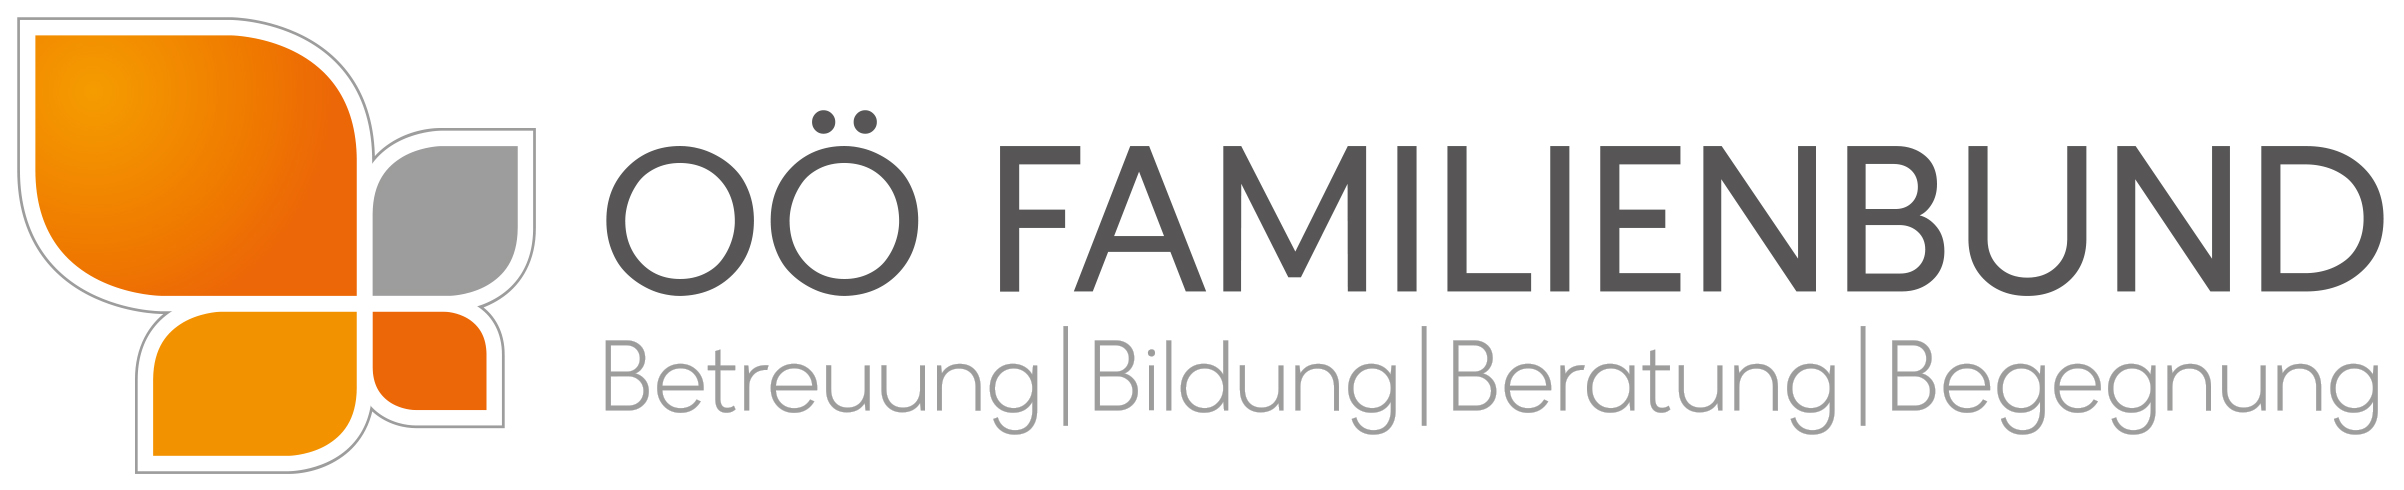 Familienbund Oberösterreich GmbH | Familie und Beruf